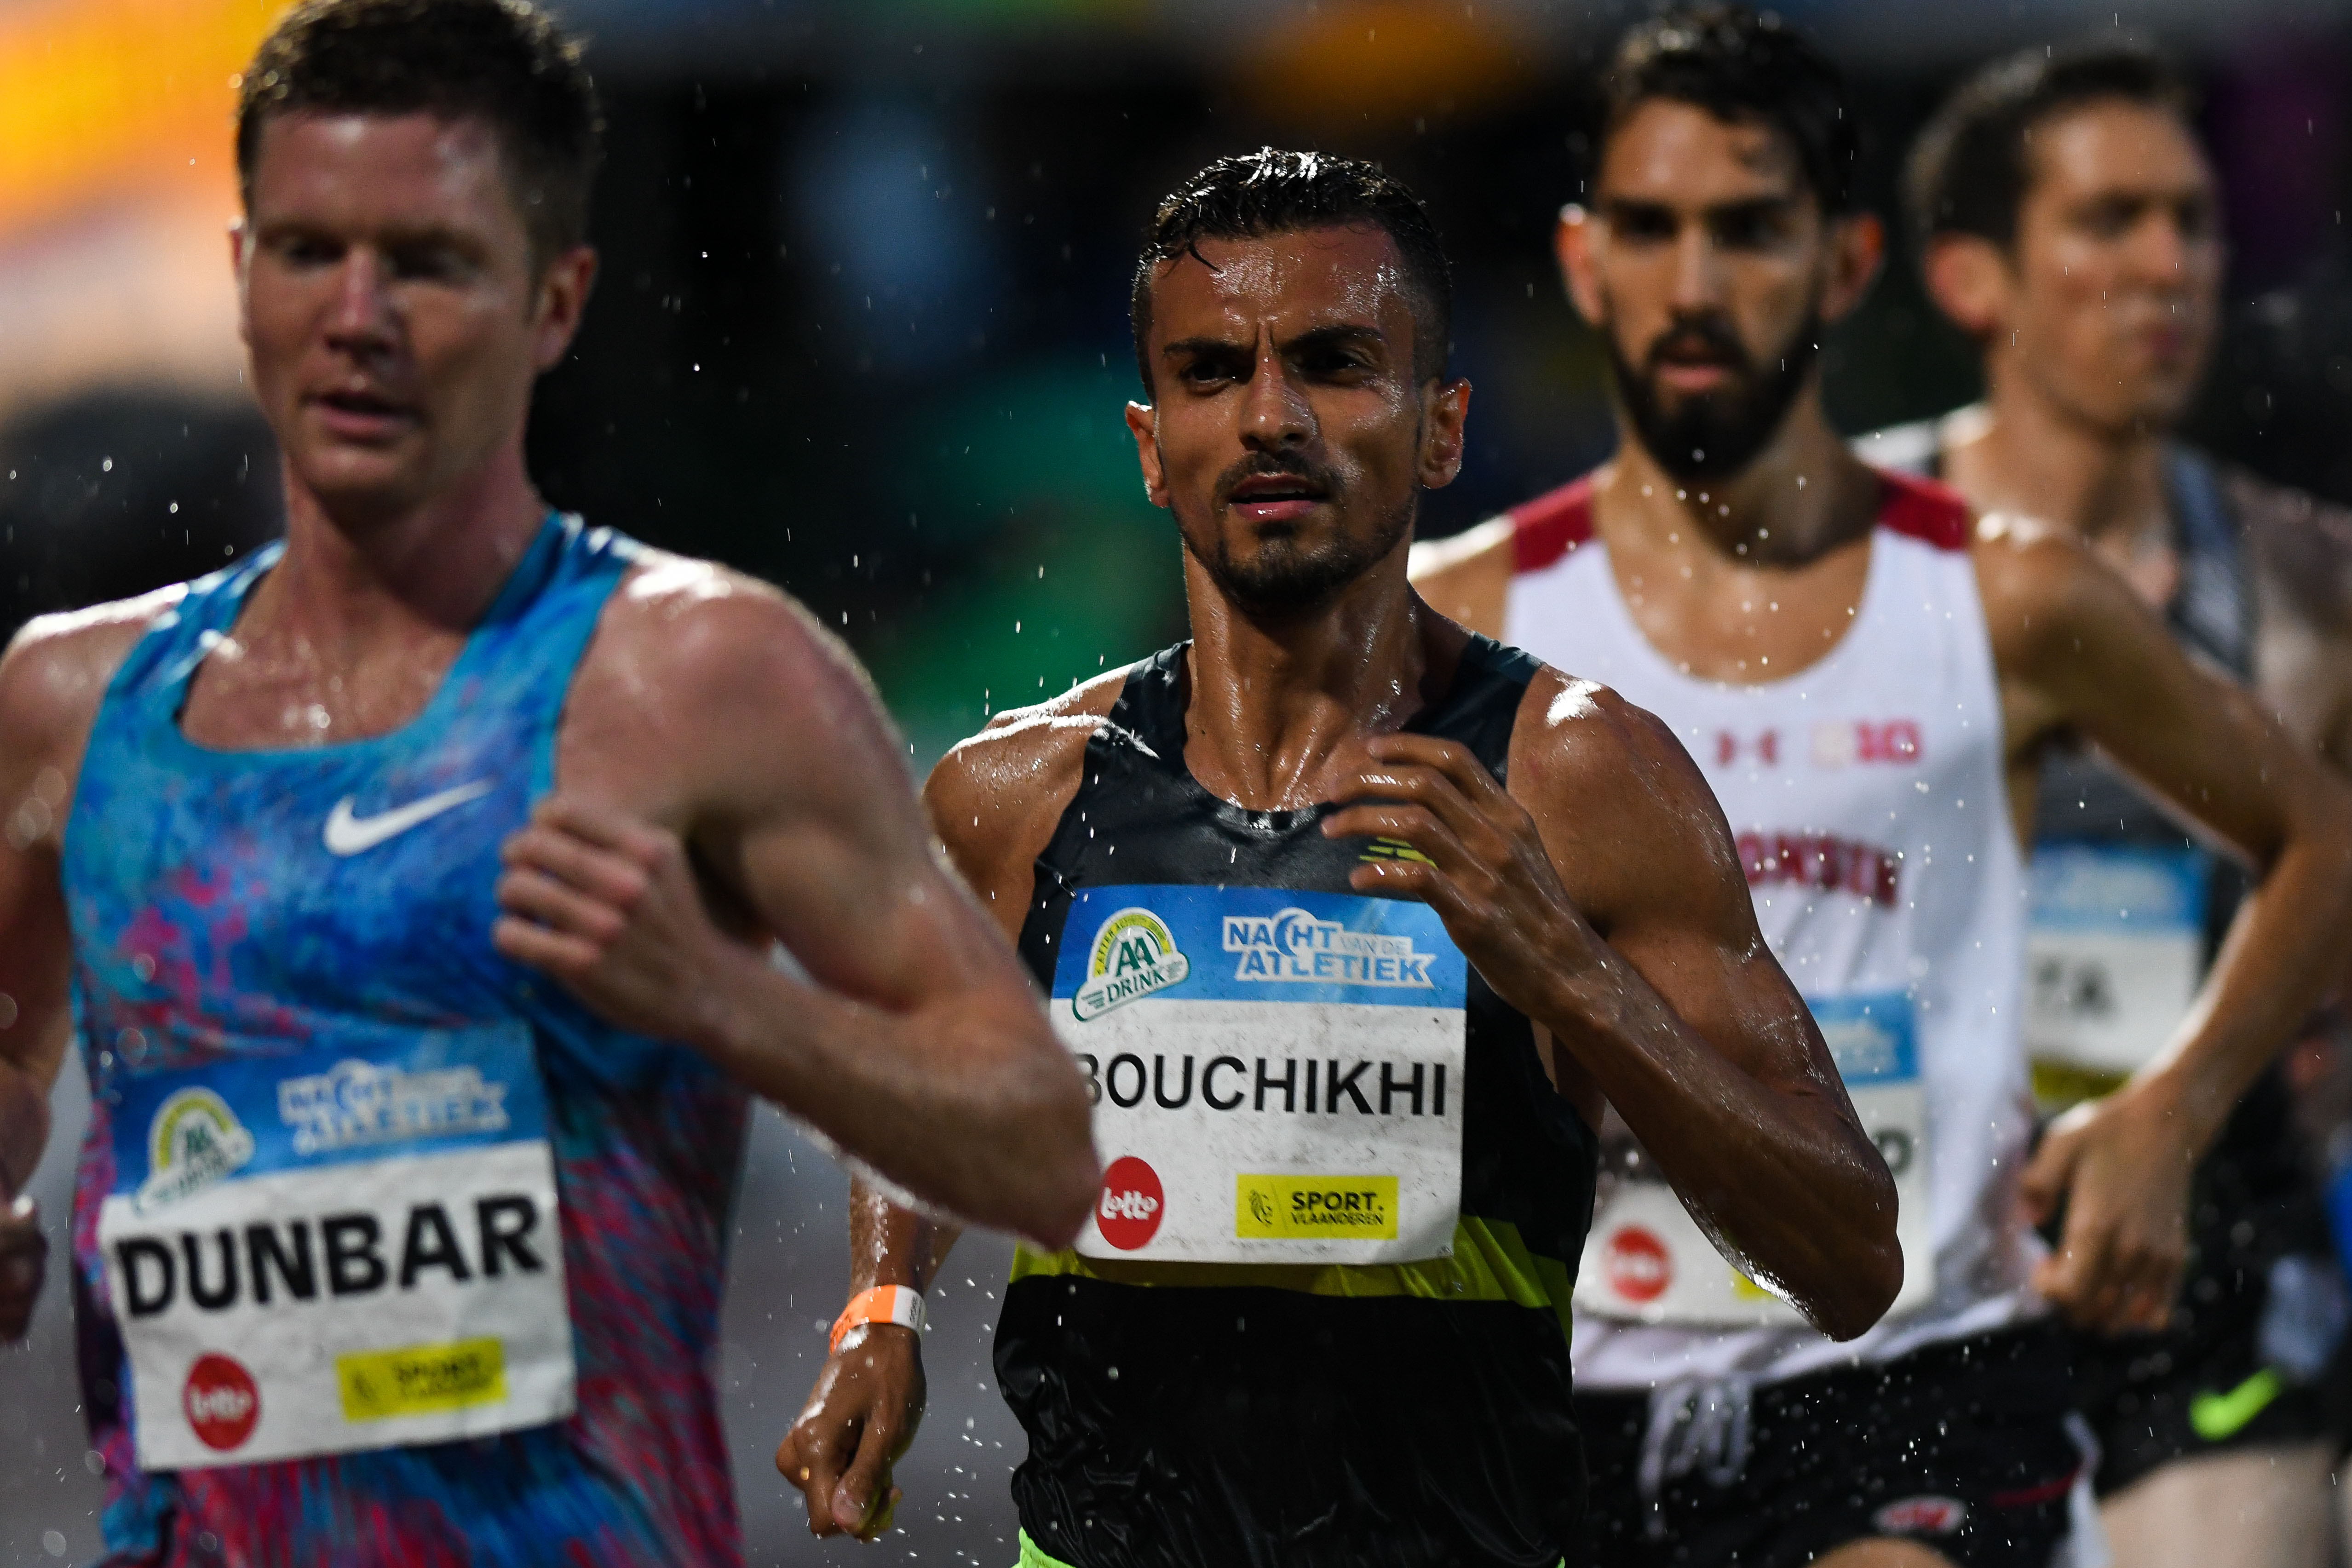 Soufiane Bouchikhi 5000m  Nacht van de atletiek 2017